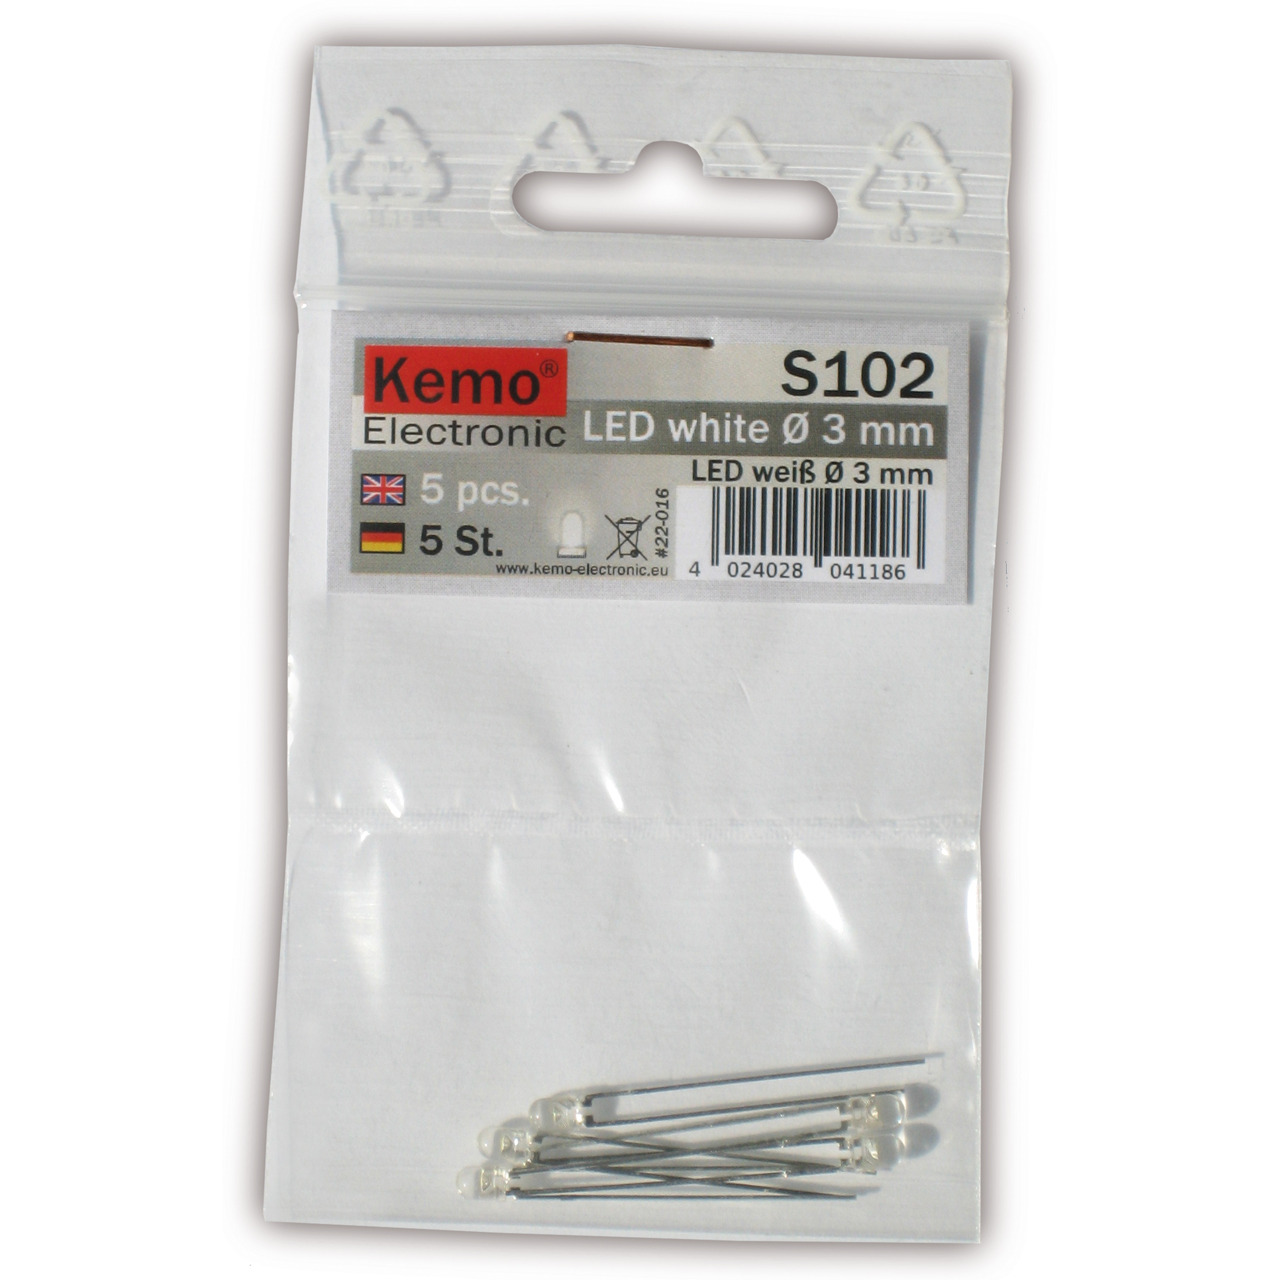 Kemo LED-Sortiment S102- weiss- 3 mm Durchmesser- 5 Stck unter Komponenten